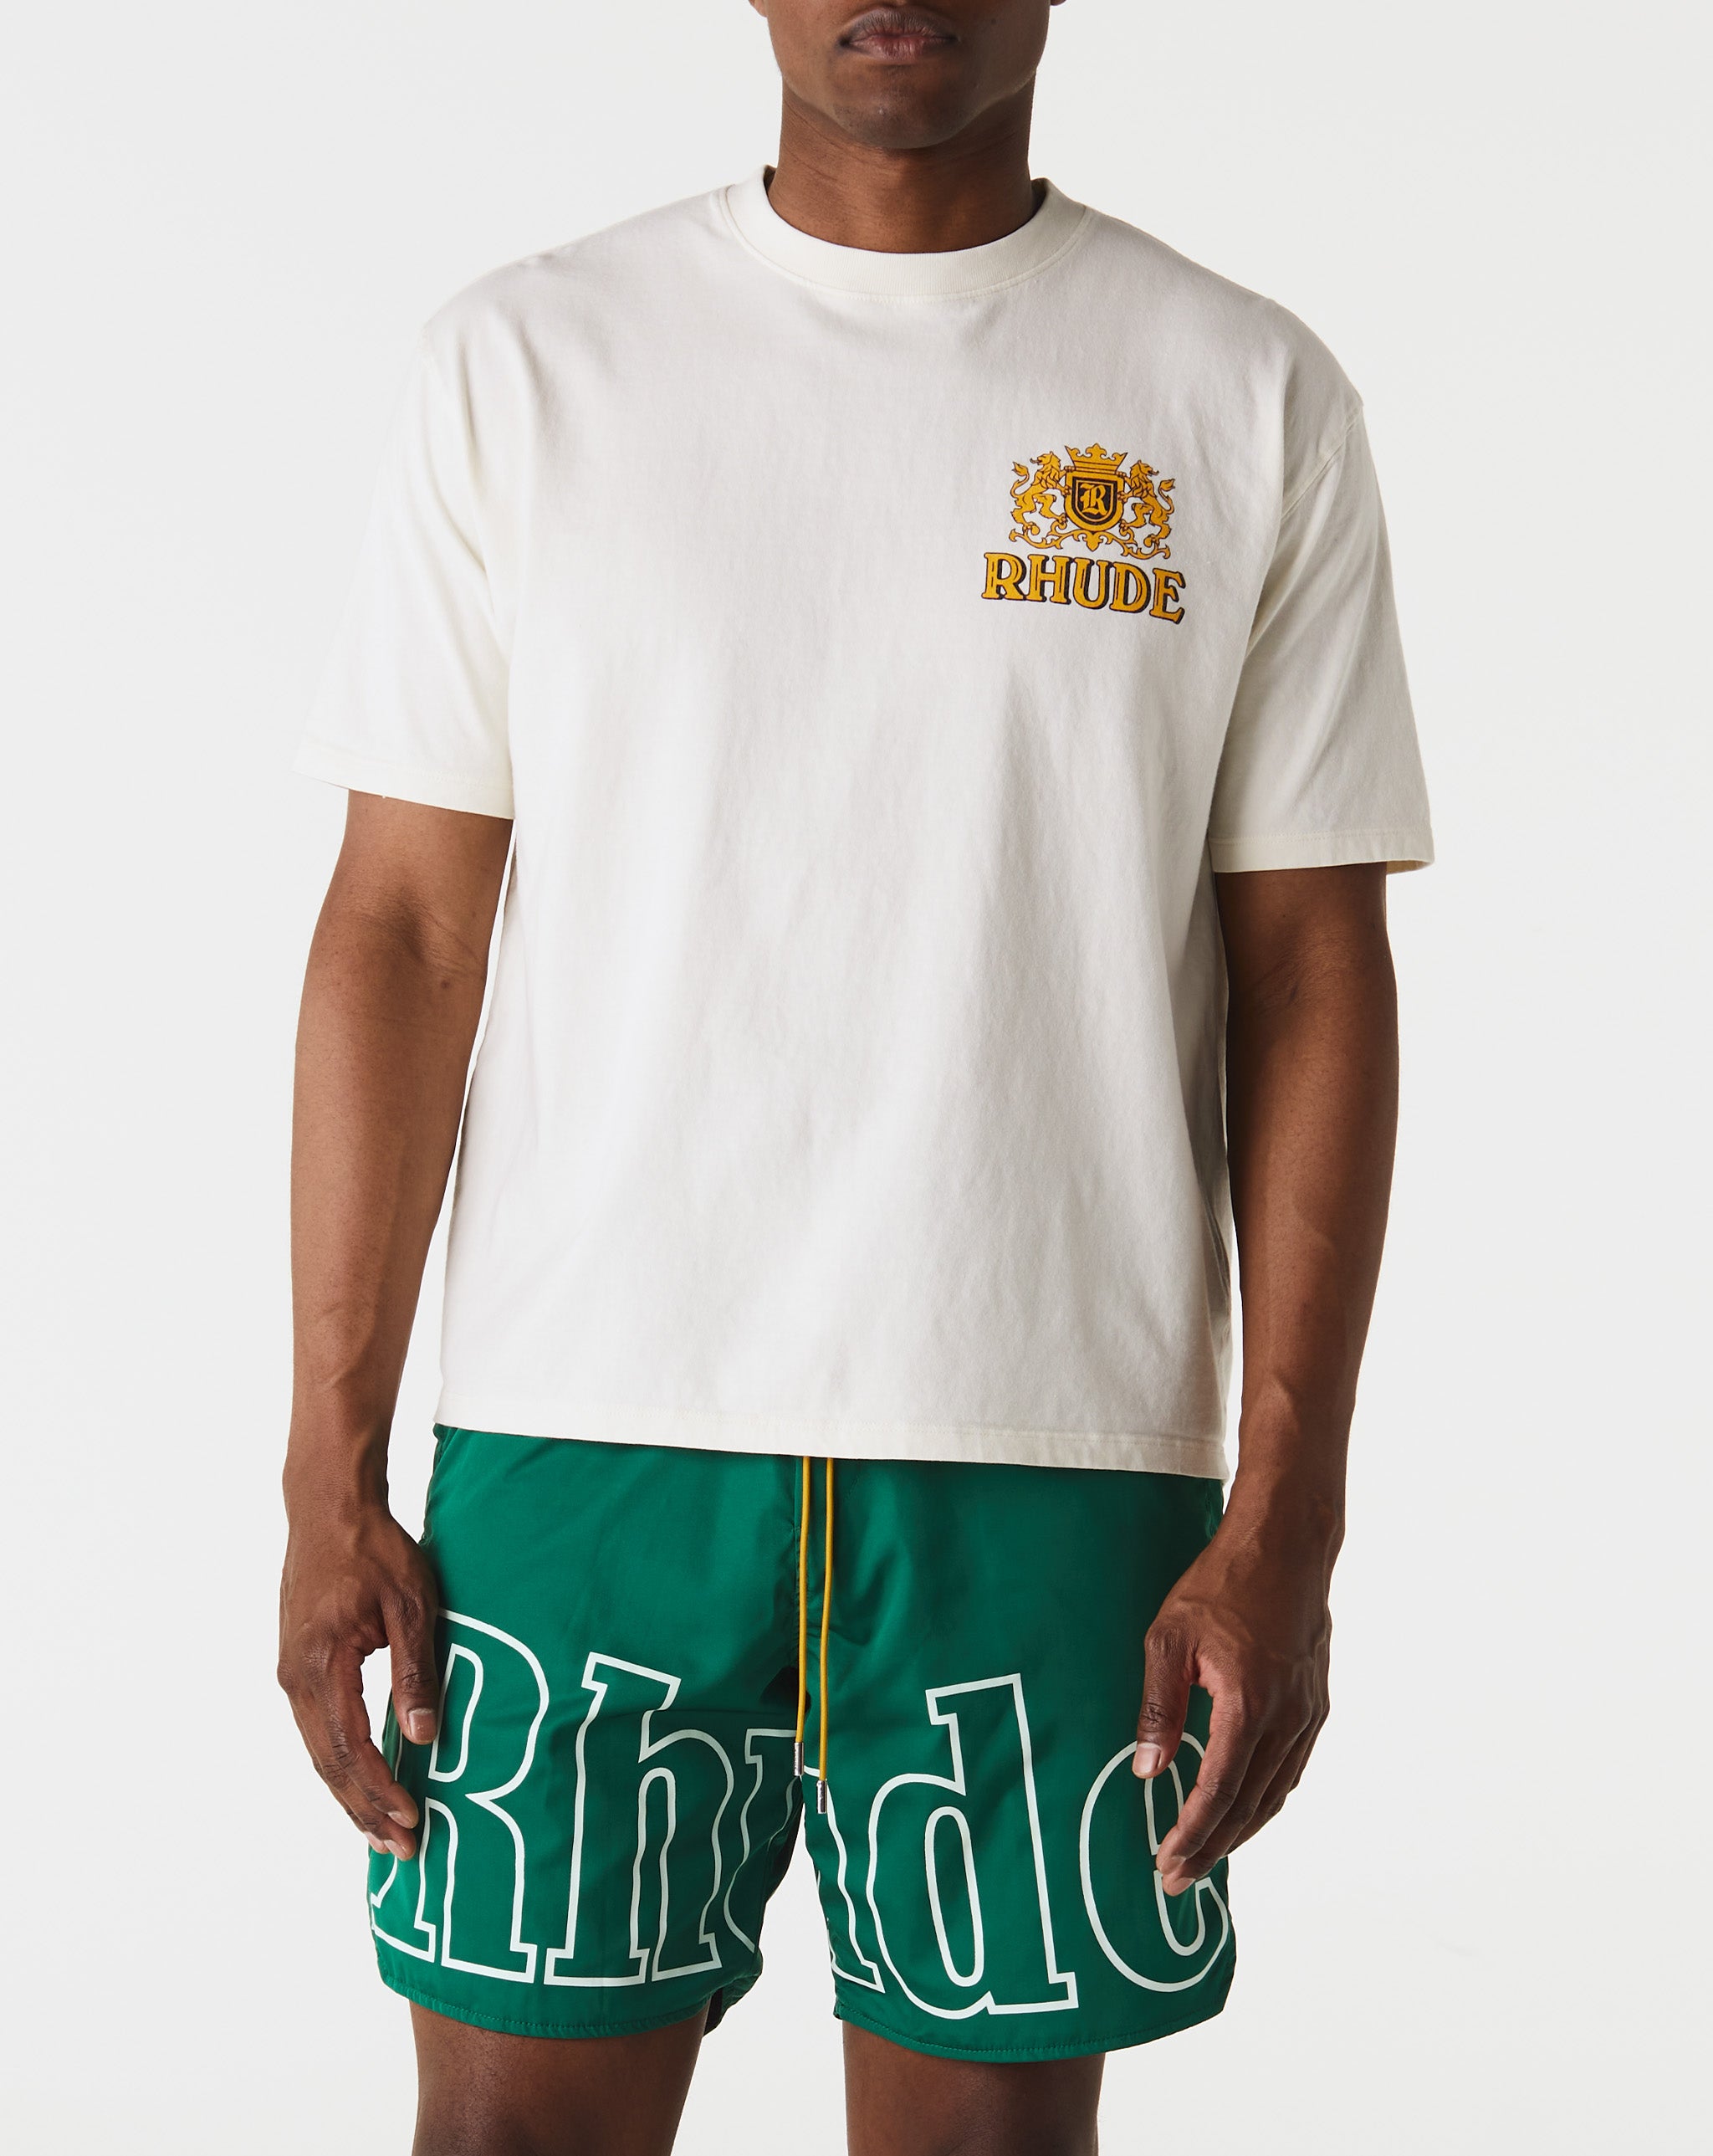 Rhude Cresta Cigar T-Shirt  - Cheap 127-0 Jordan outlet